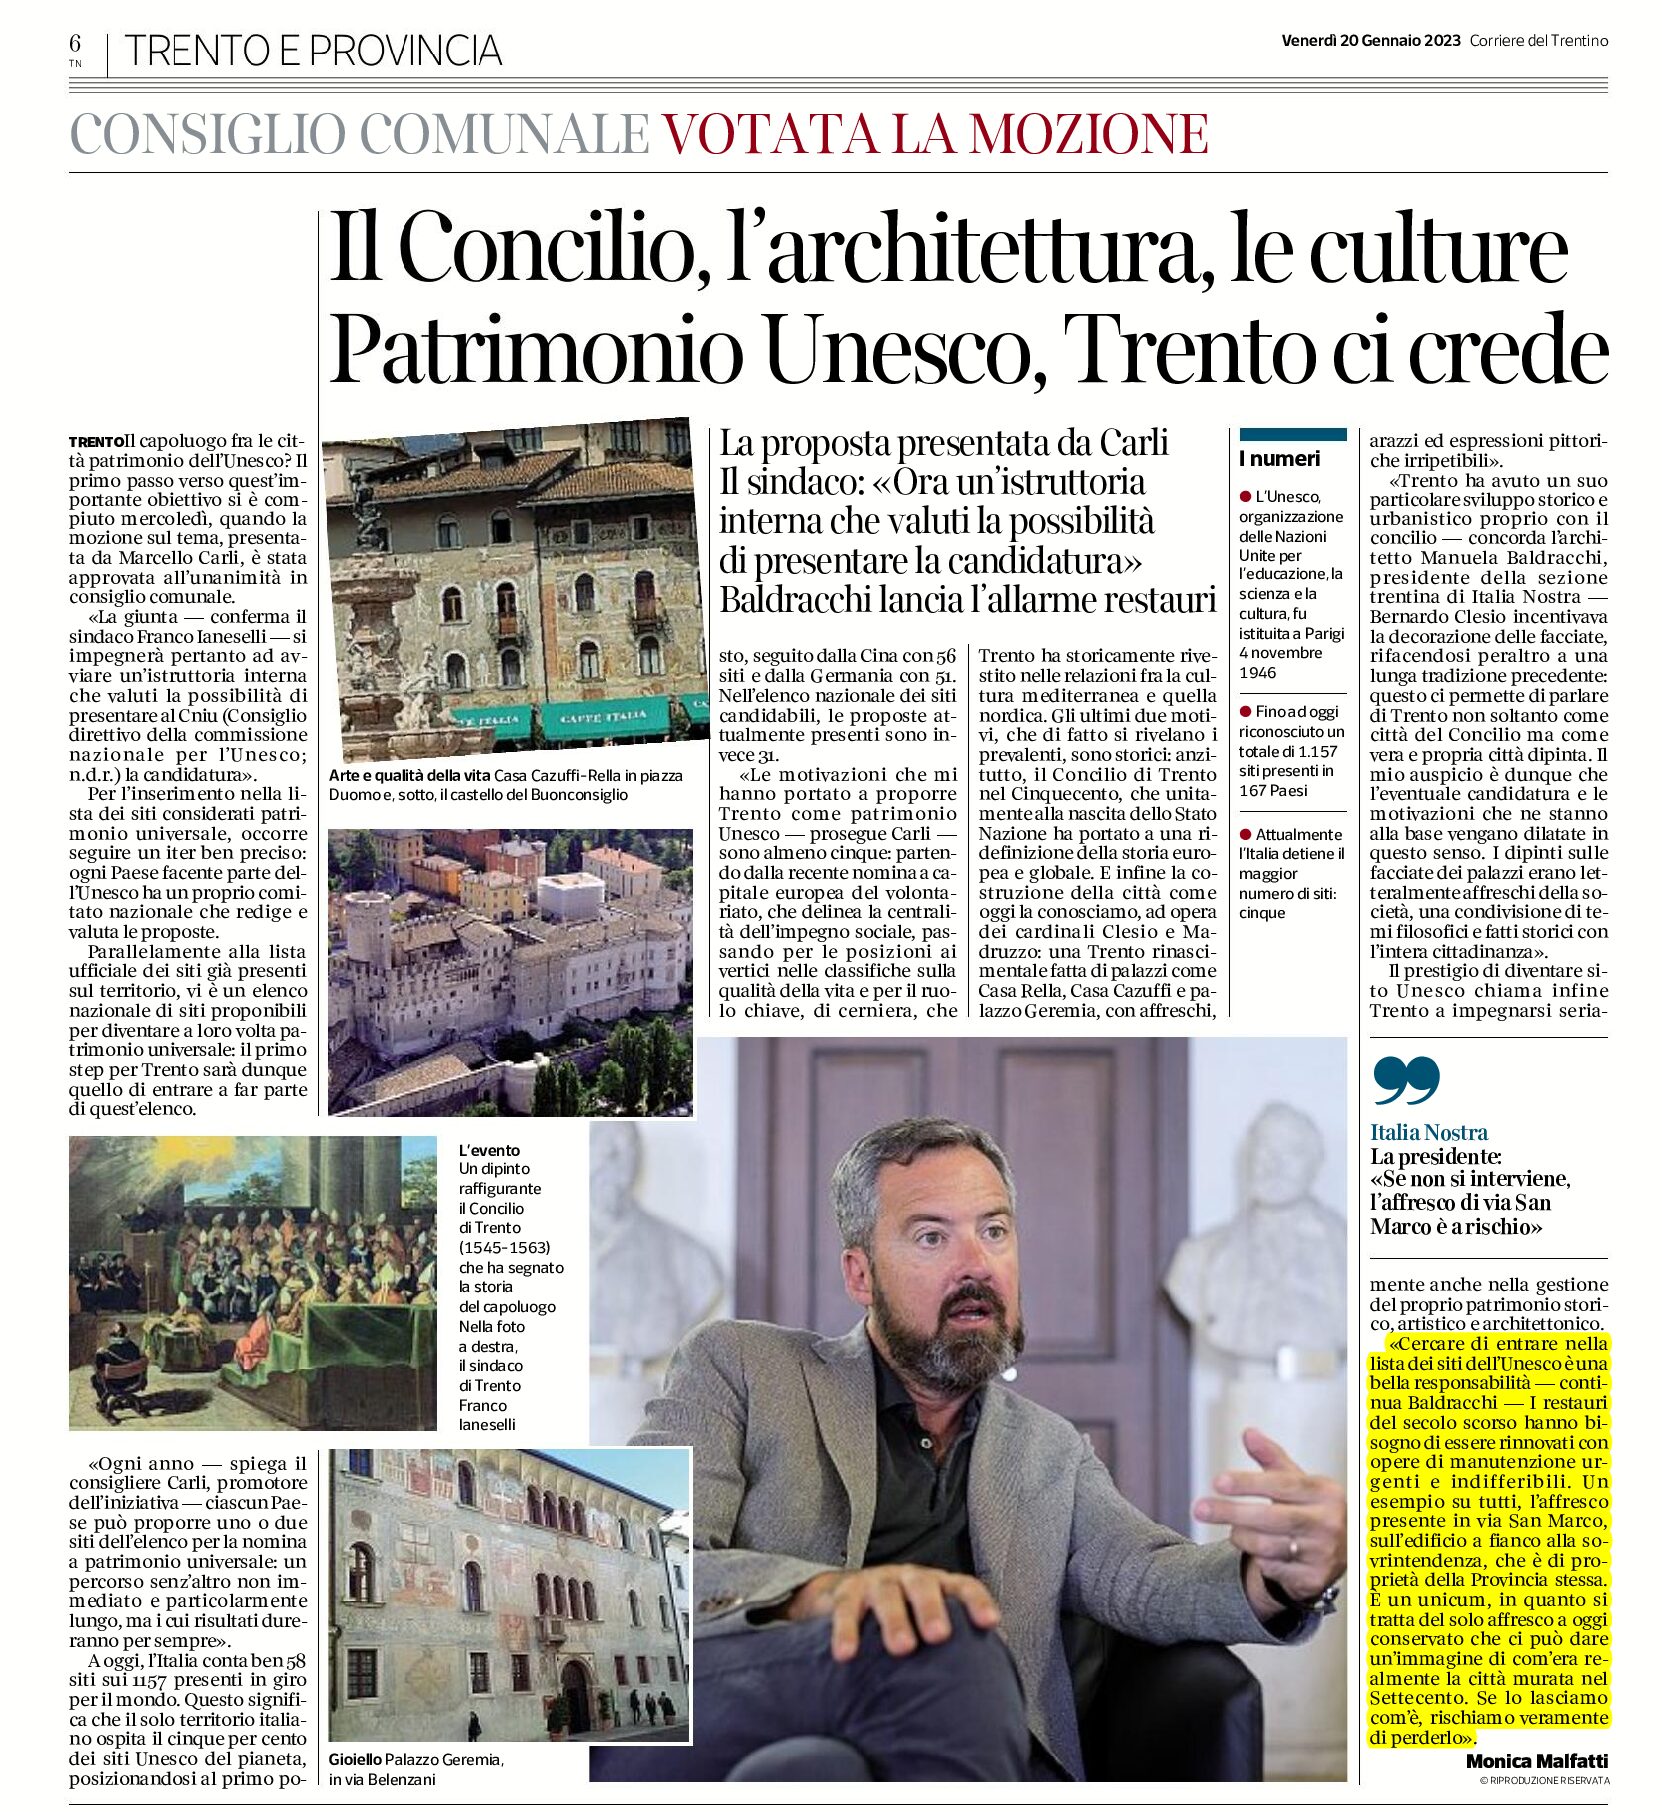 Trento: patrimonio Unesco. Il Concilio, l’architettura, le culture